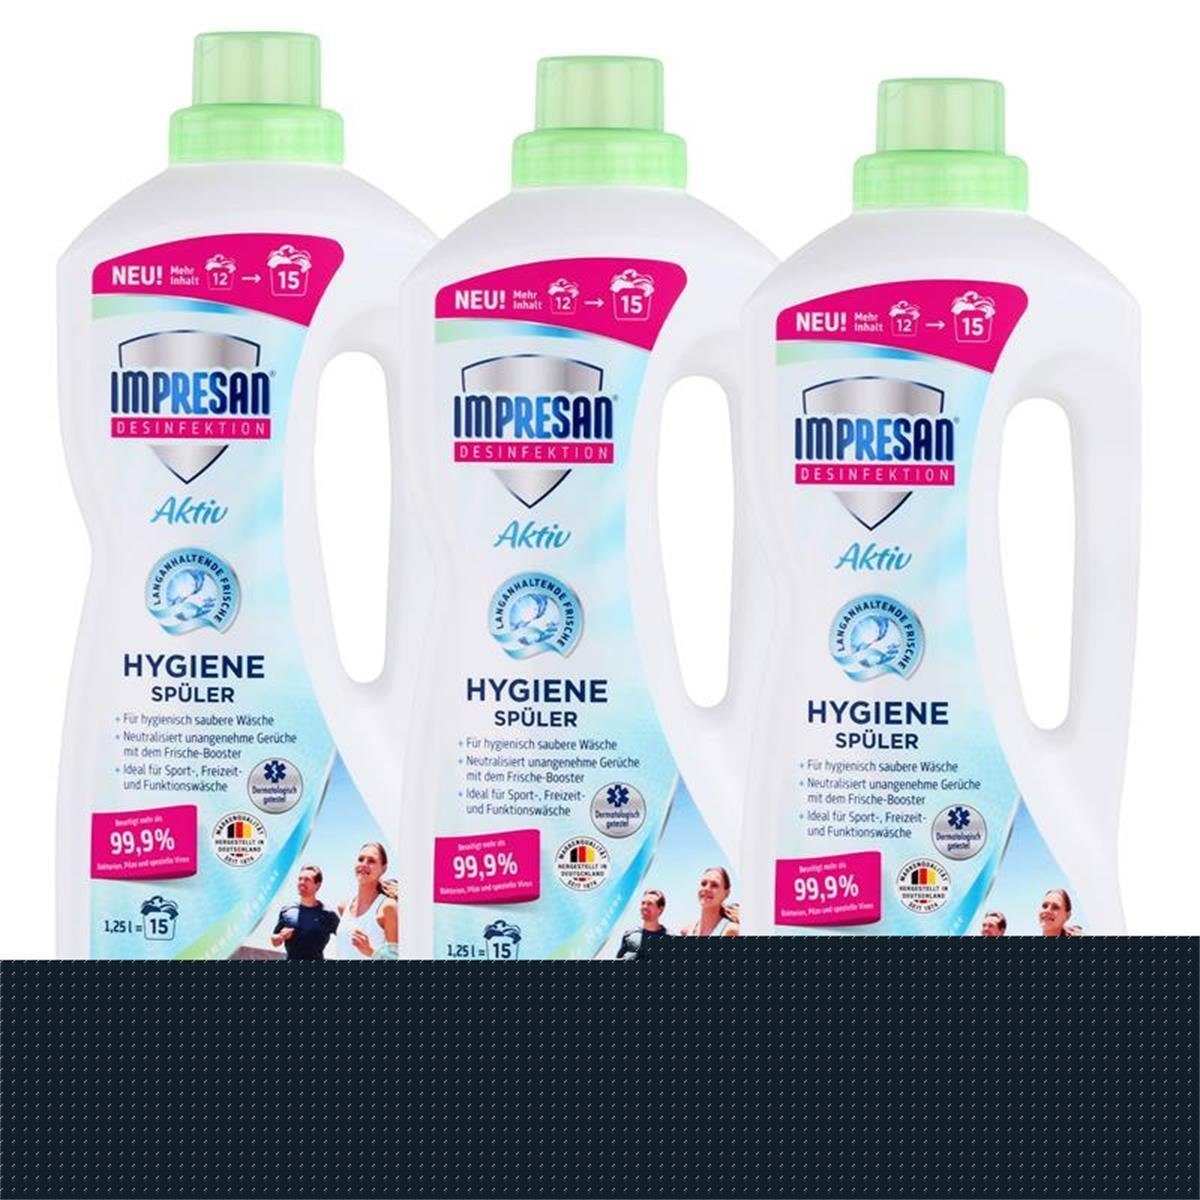 IMPRESAN Impresan Desinfektion Aktiv Hygienespüler 1,25L - Ideal für Sportwäsch Spezialwaschmittel | Waschmittel